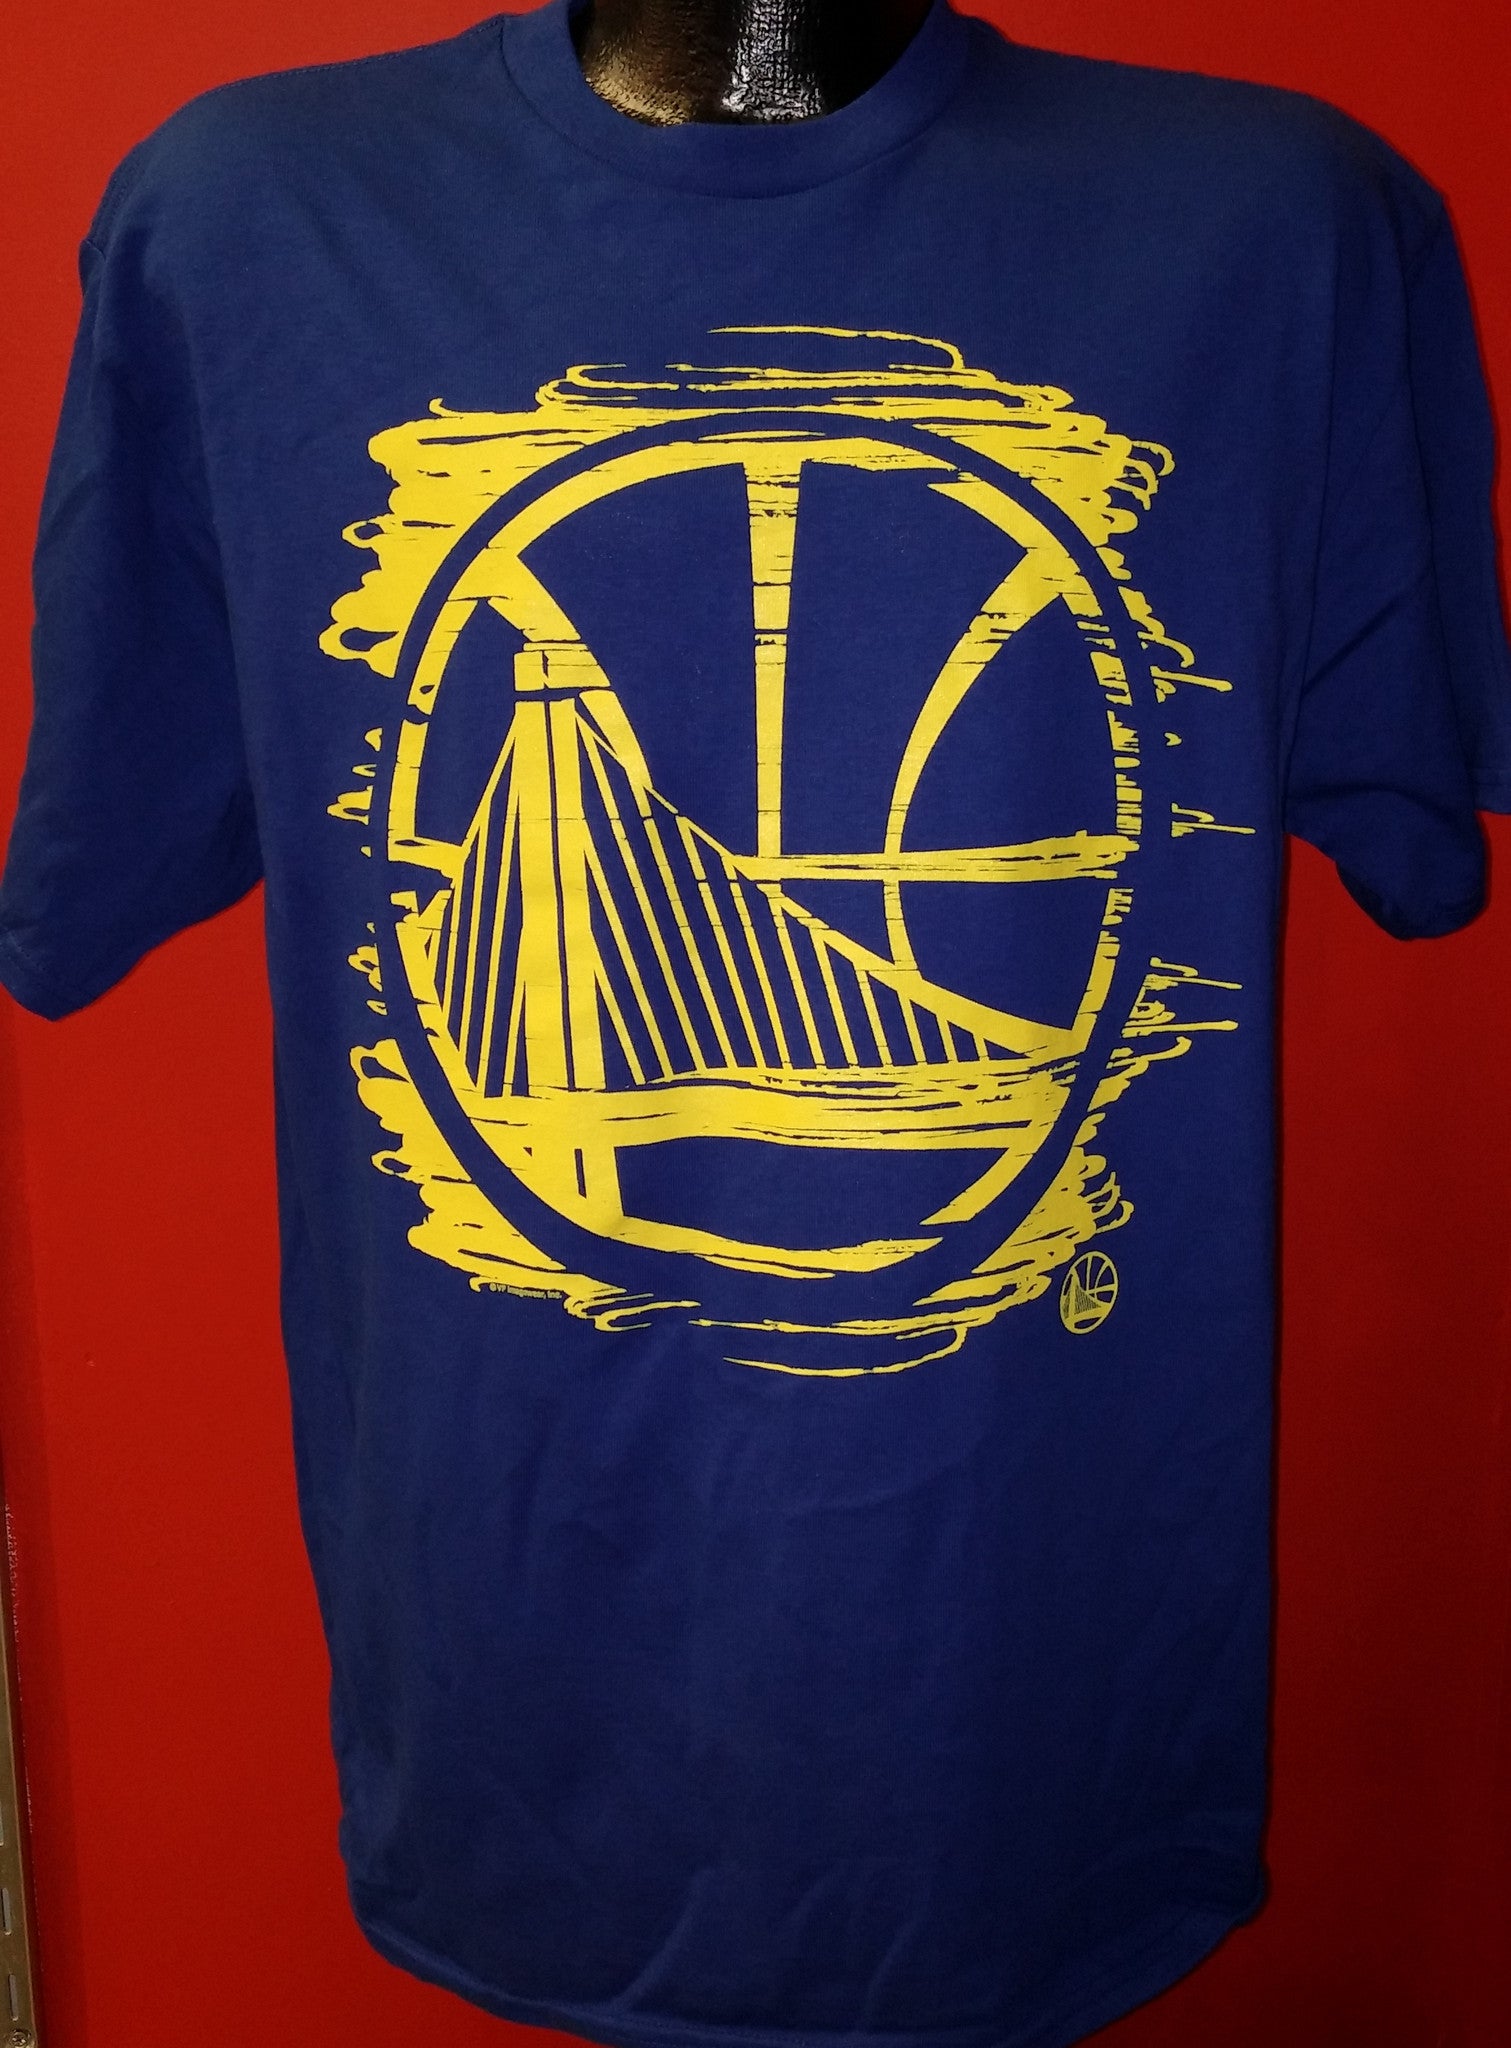 30 Stephen Curry The Town Blue Golden State Warriors shirt - Kingteeshop